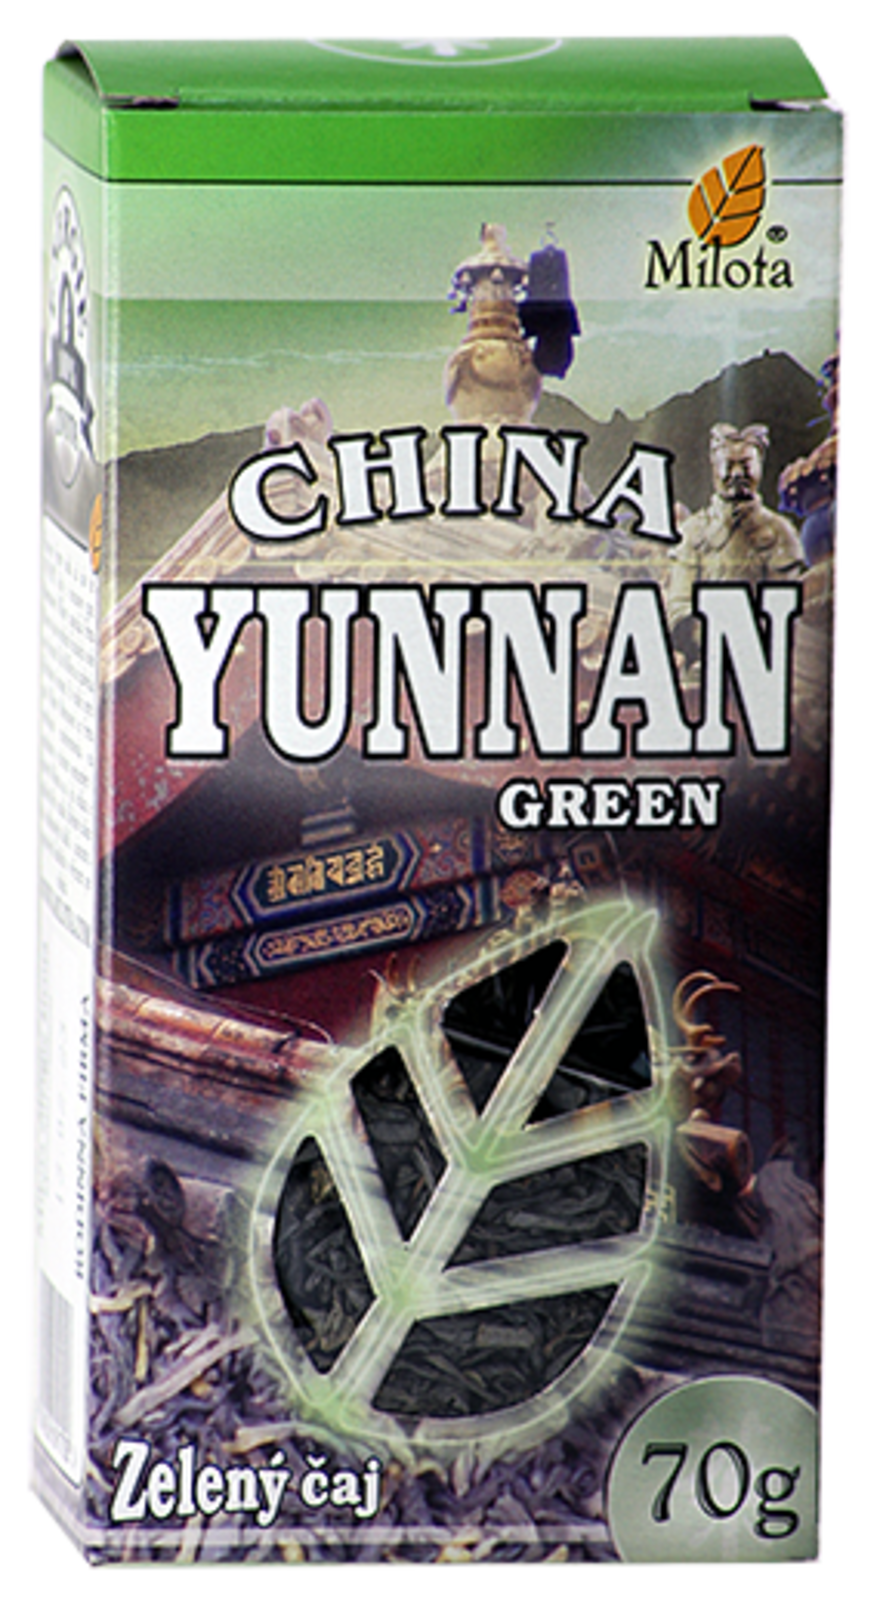 China Yunnan green OP 70g Listový čaj zelený